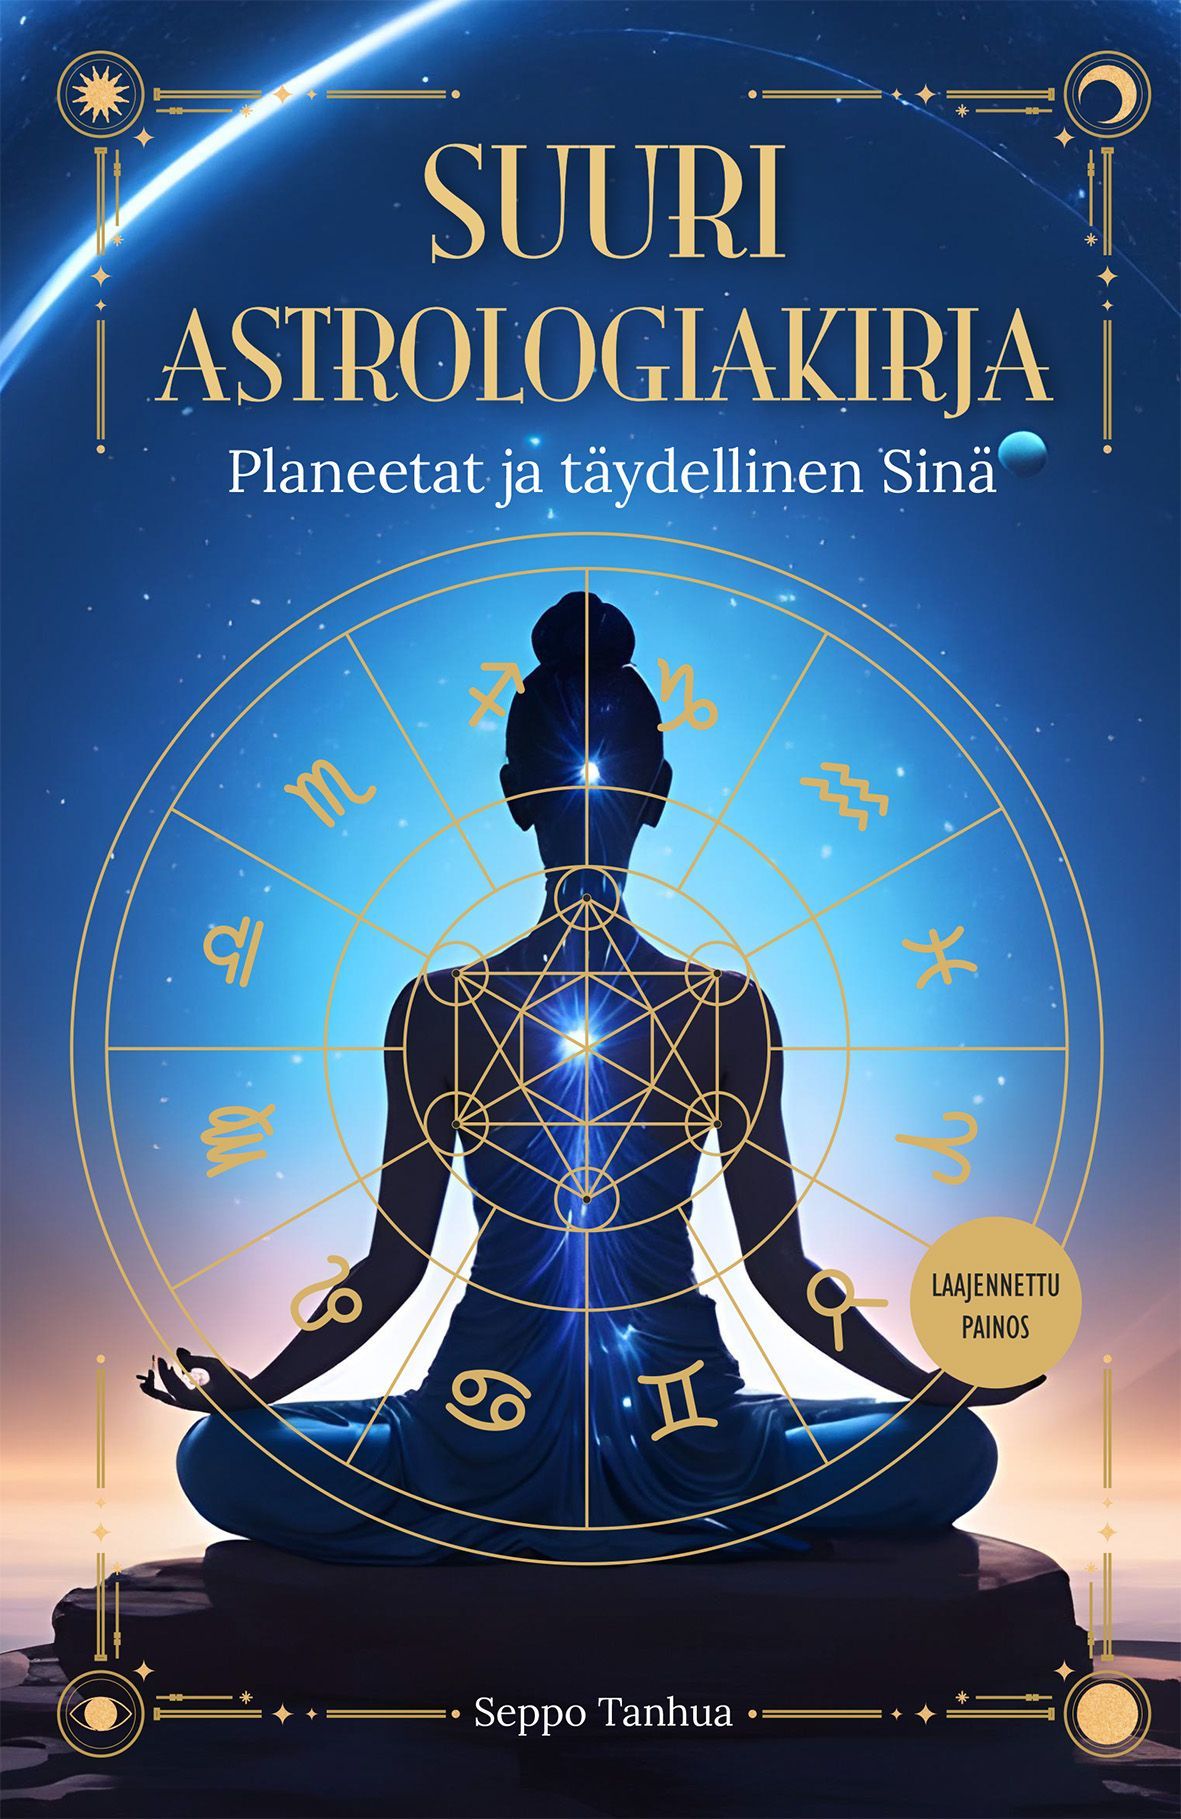 Seppo Tanhua : Suuri astrologiakirja - Planeetat ja täydellinen sinä  - Laajennettu painos